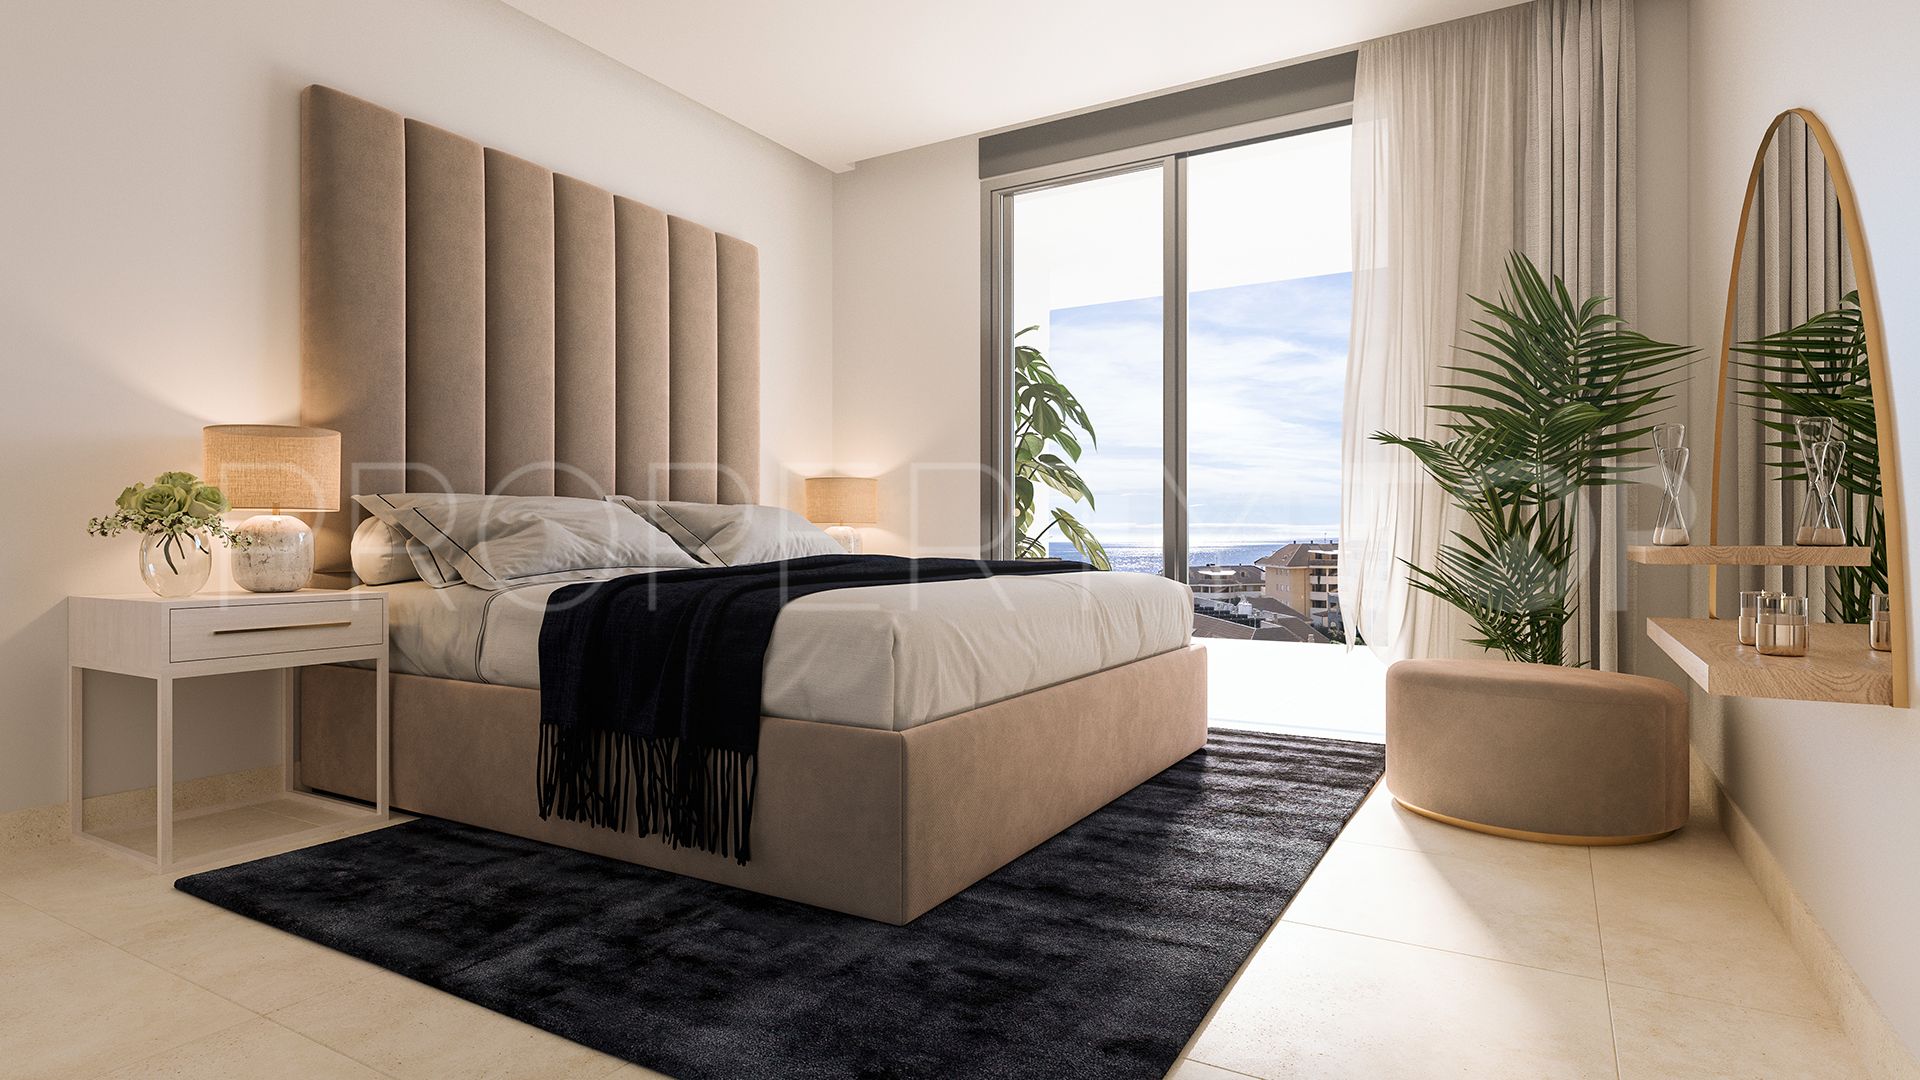 Buy El Higueron ground floor apartment with 2 bedrooms